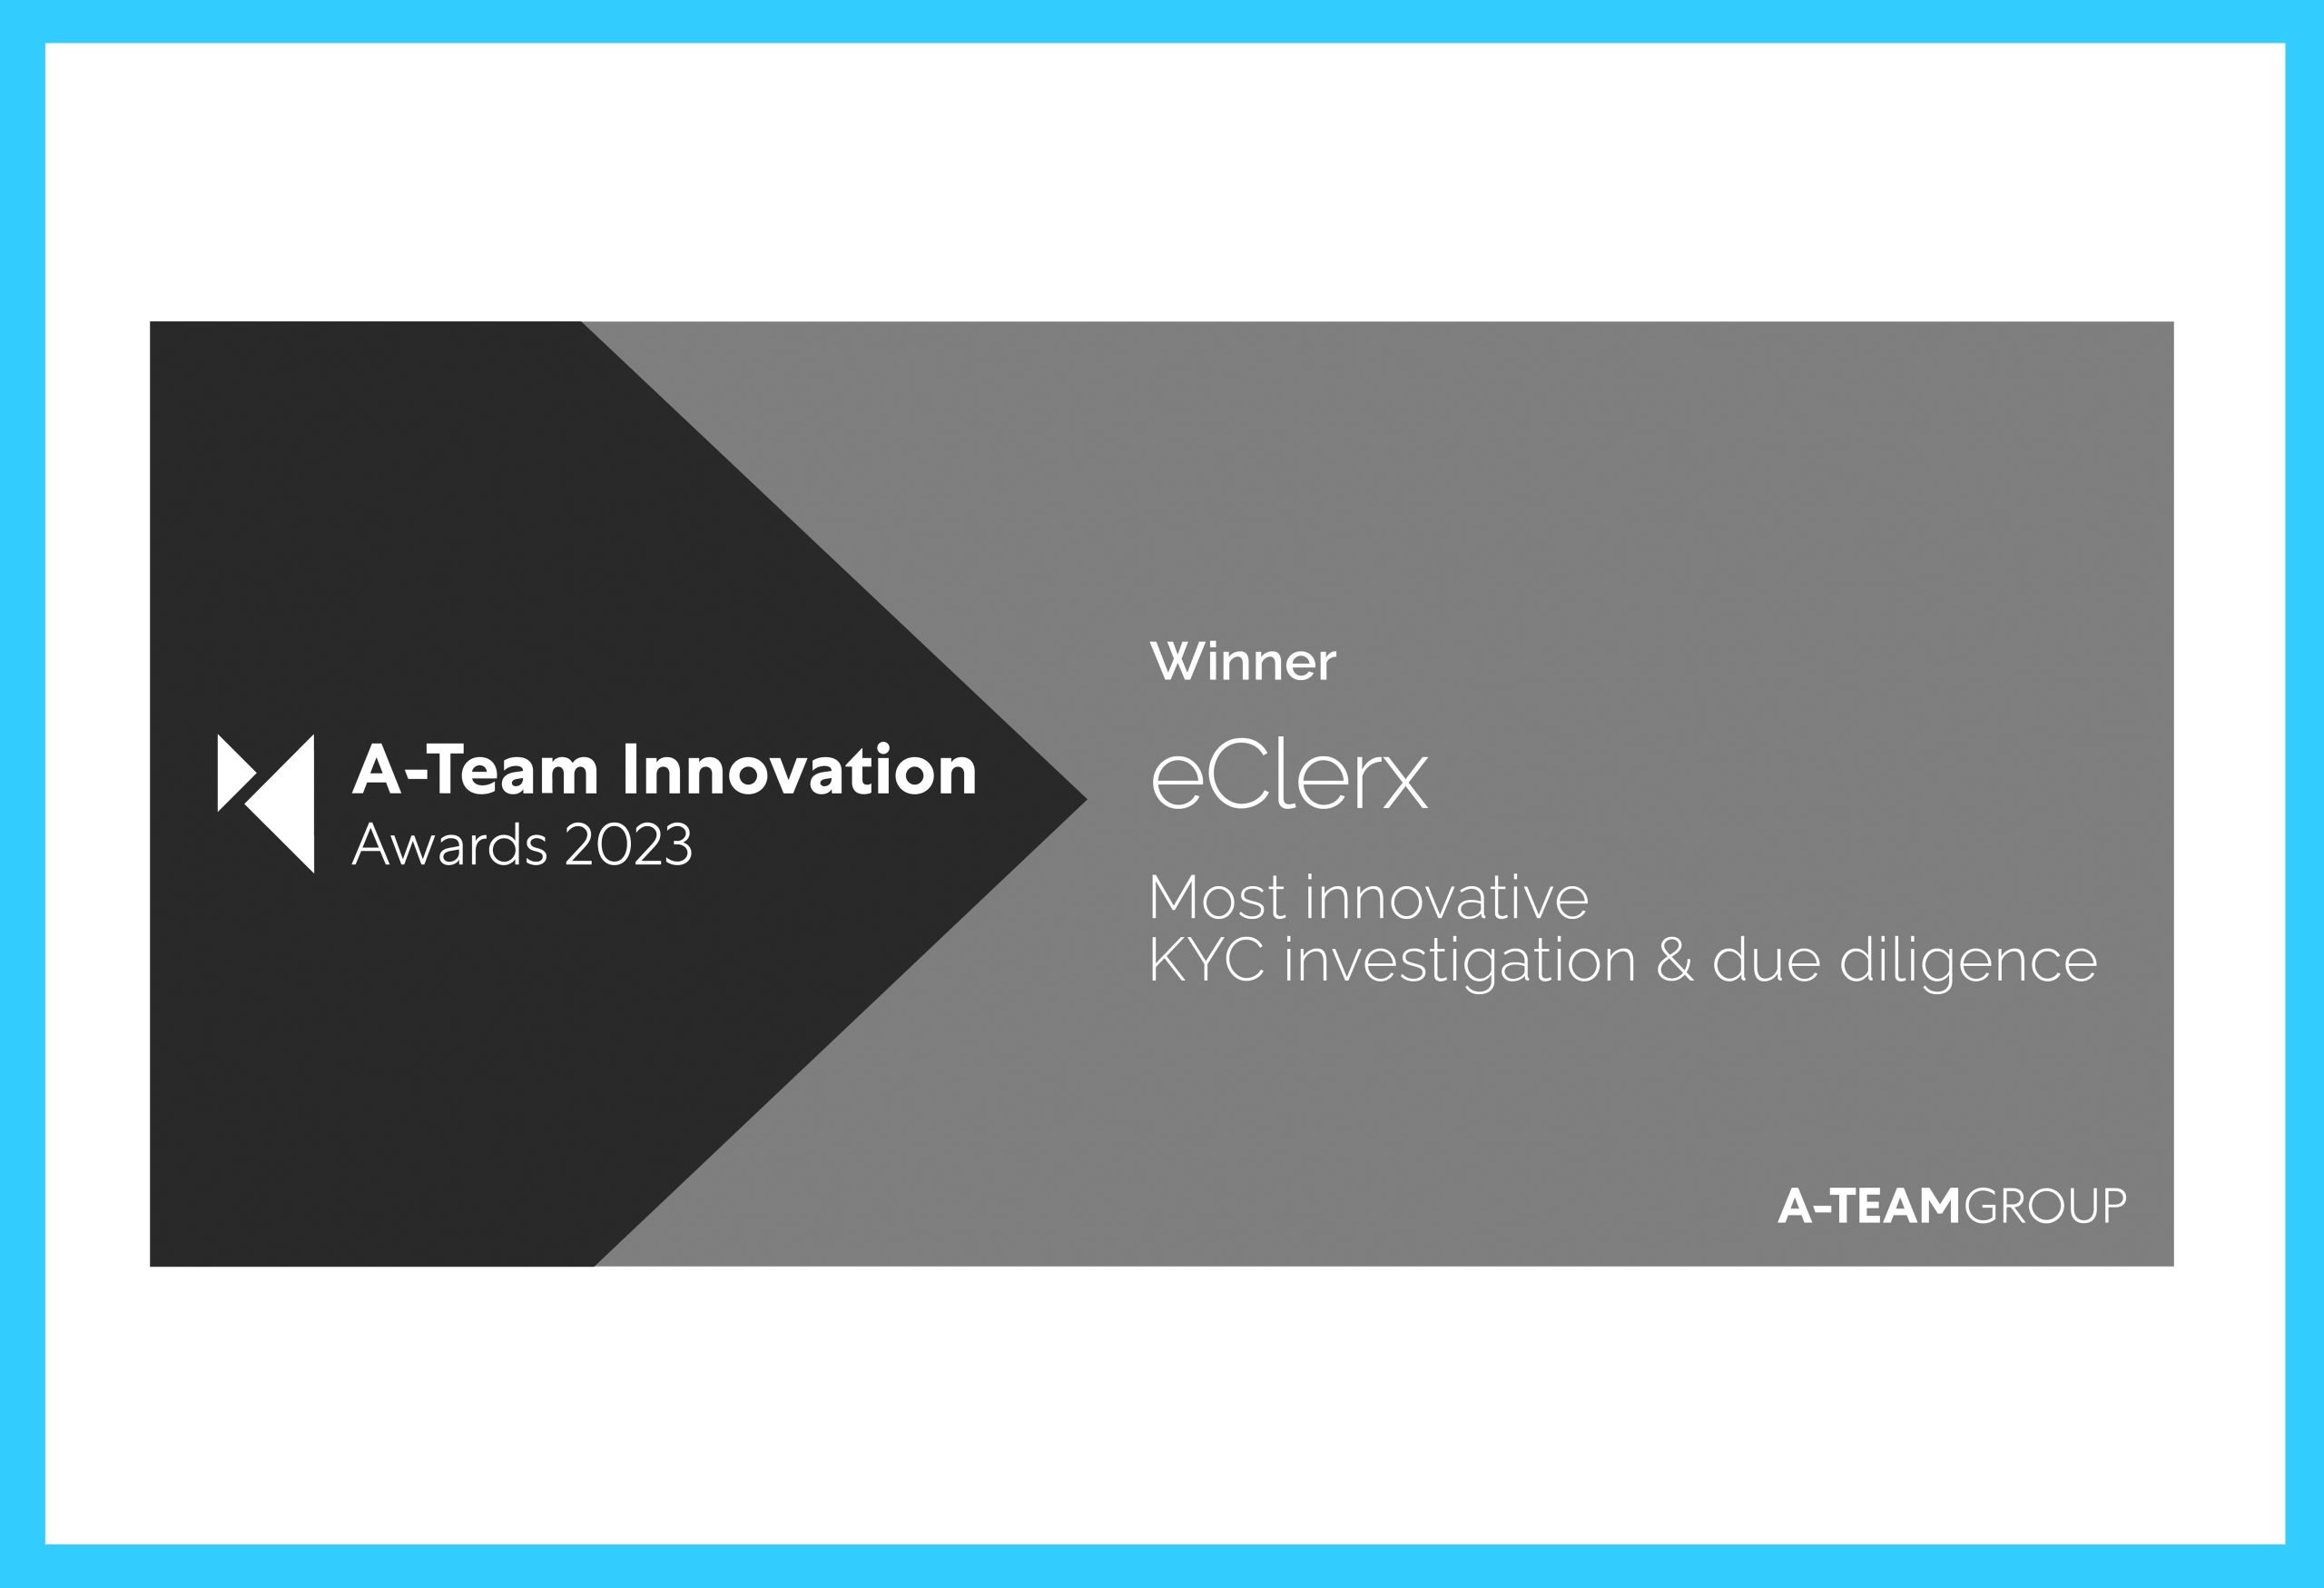 A - Team Innovation Awards